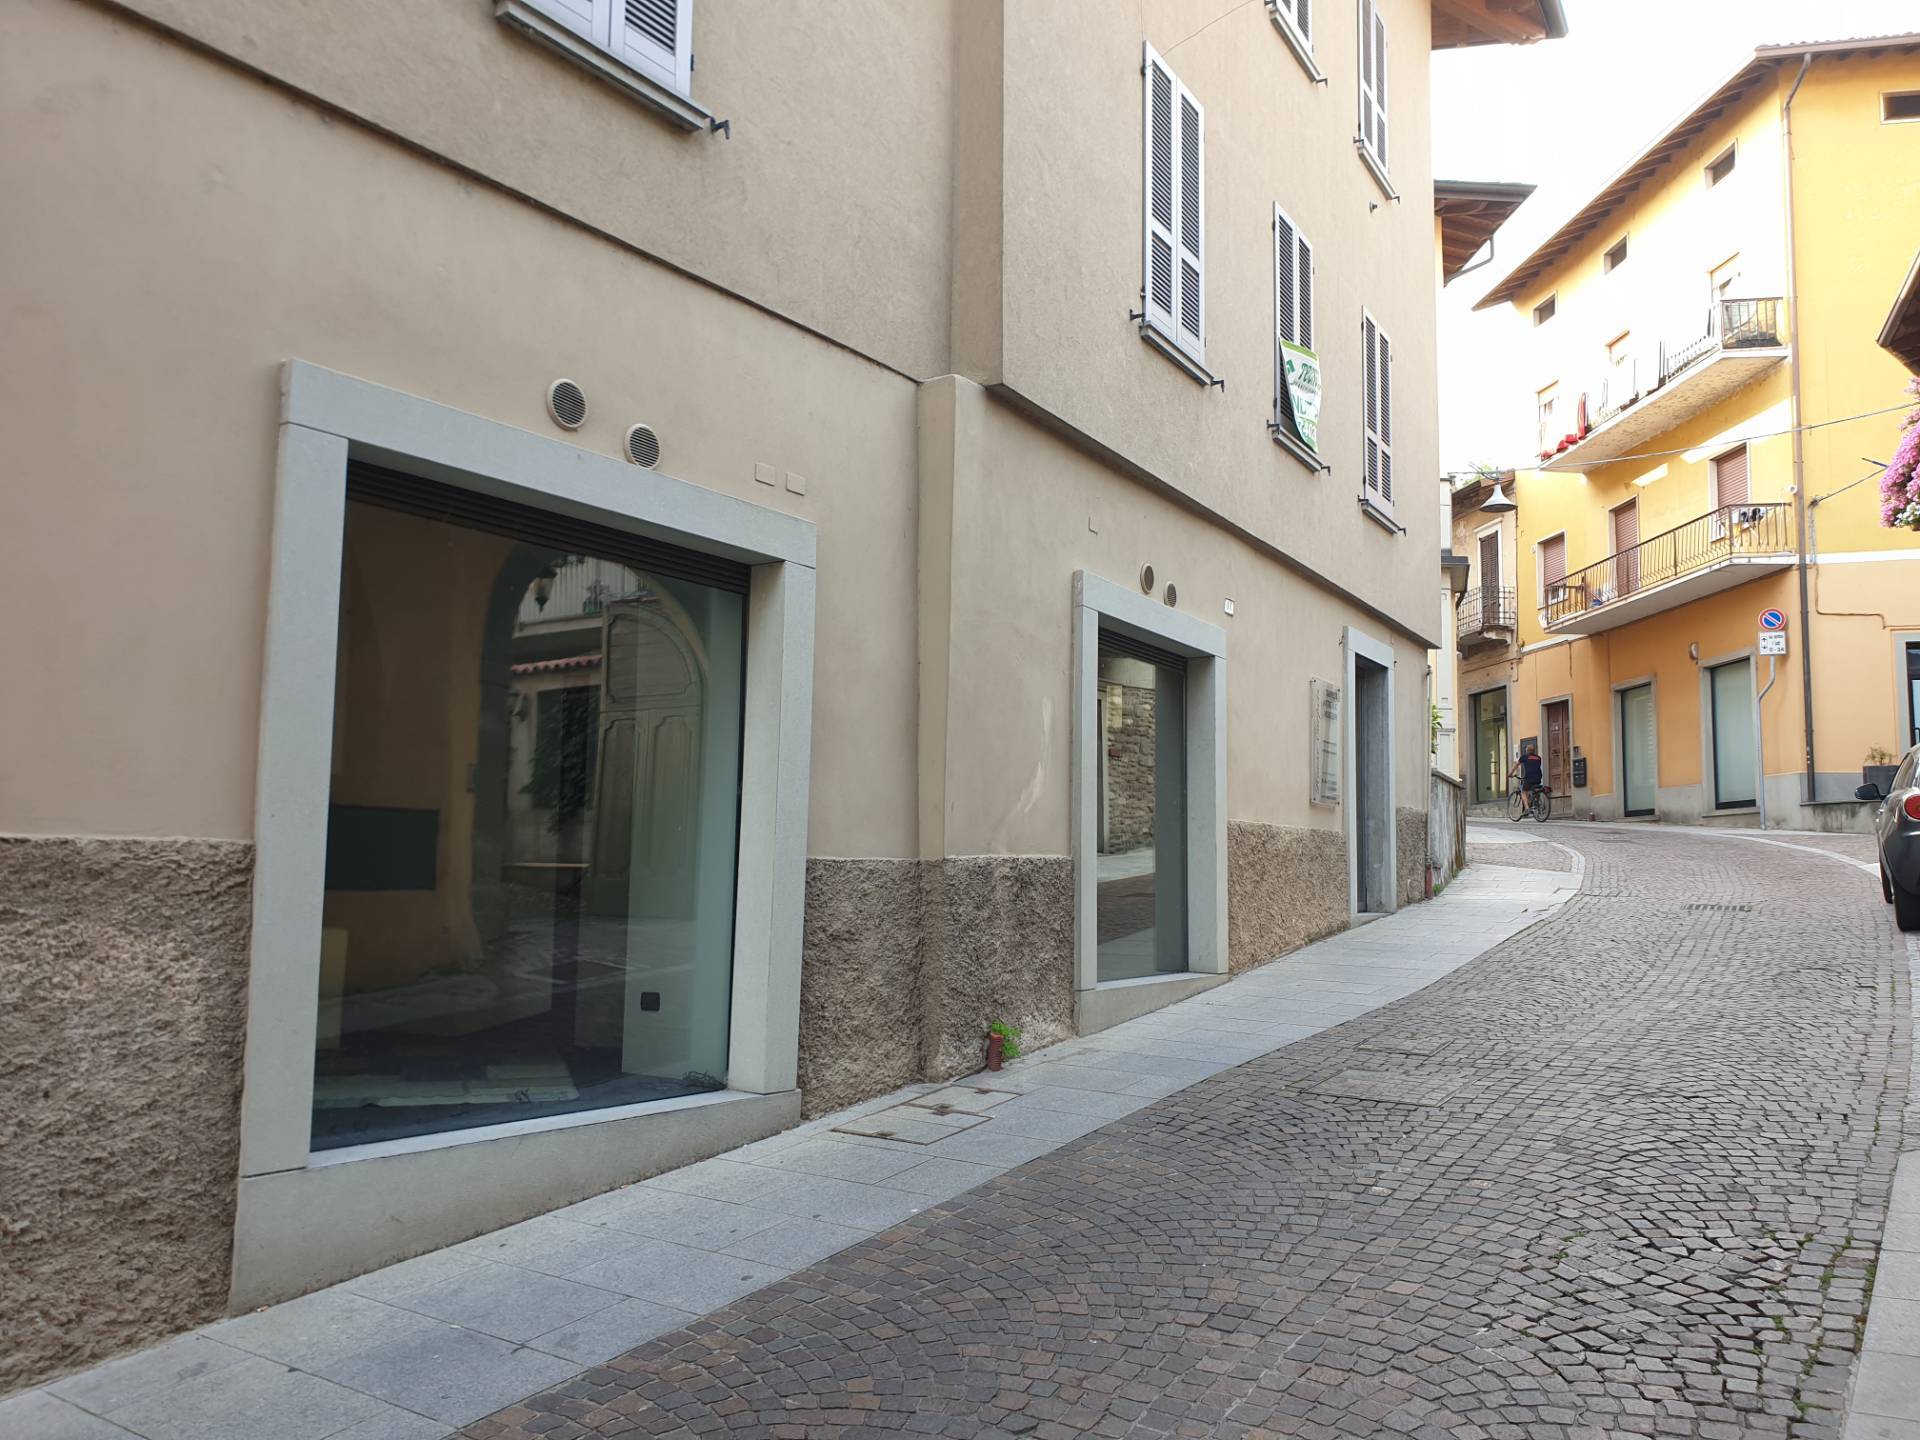 Ufficio / Studio in vendita a Palazzolo sull'Oglio, 9999 locali, prezzo € 95.900 | PortaleAgenzieImmobiliari.it